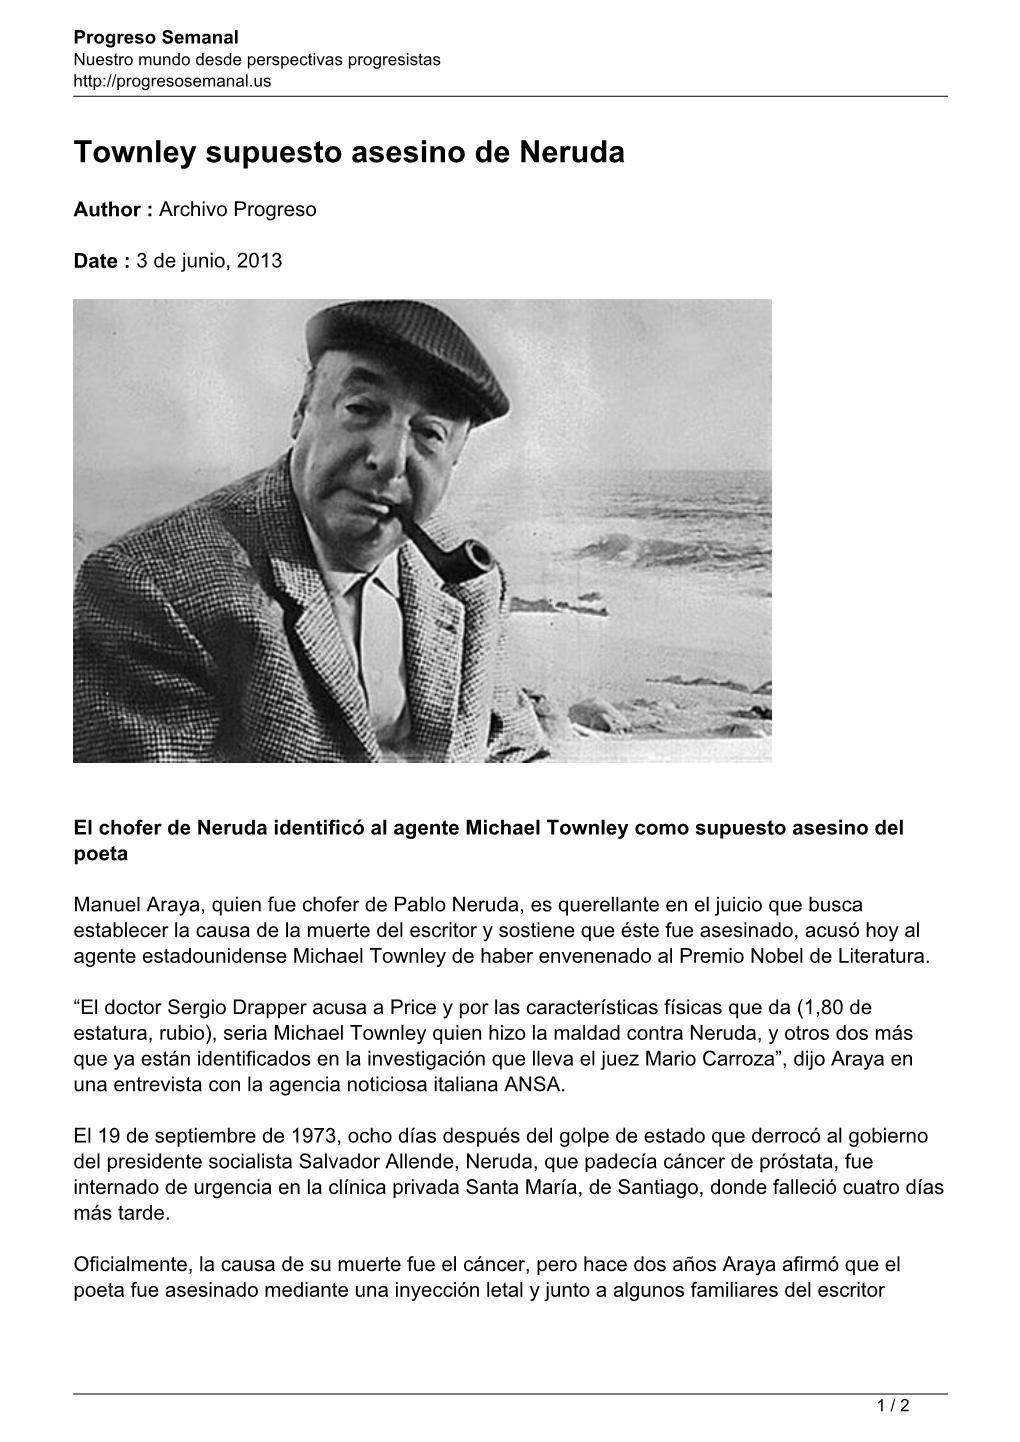 Townley Supuesto Asesino De Neruda